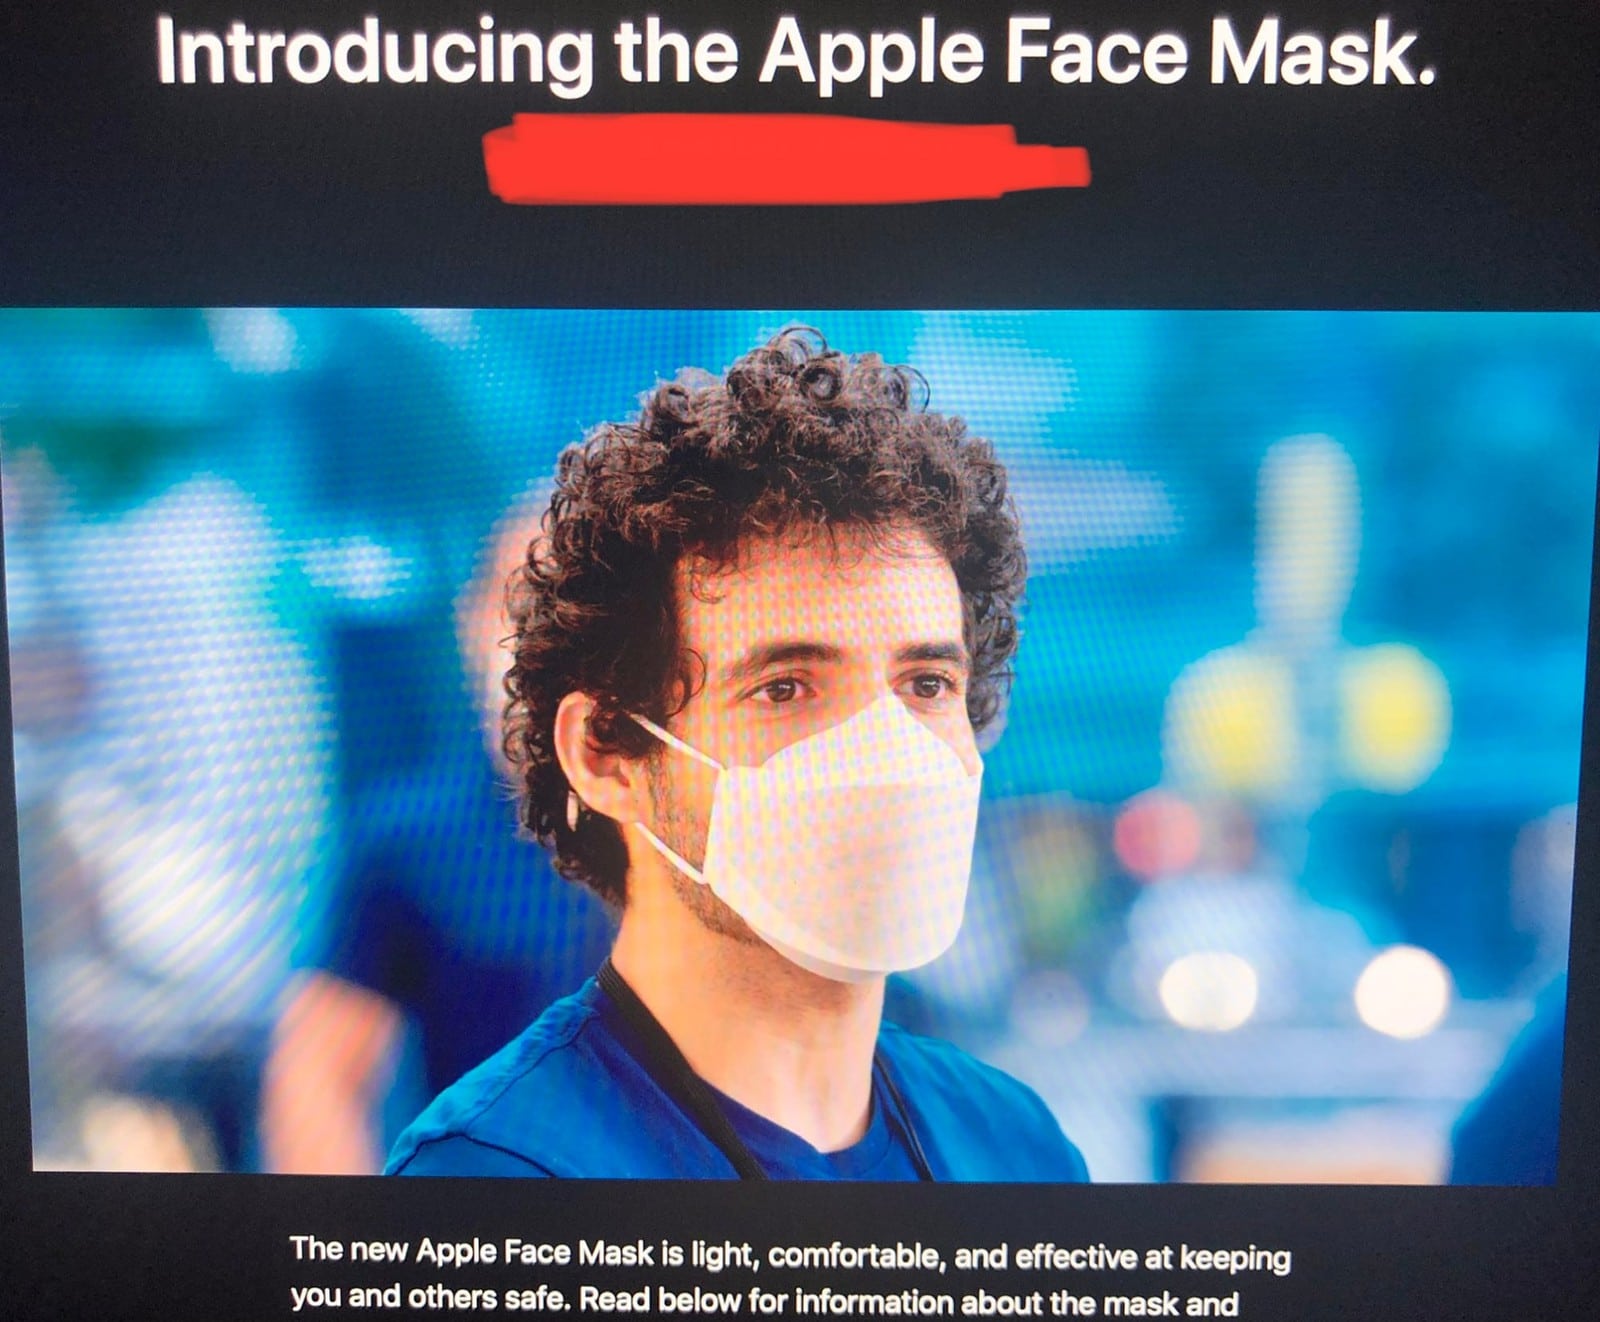 Apple Face Mask, máscara projetada e fabricada pela Apple